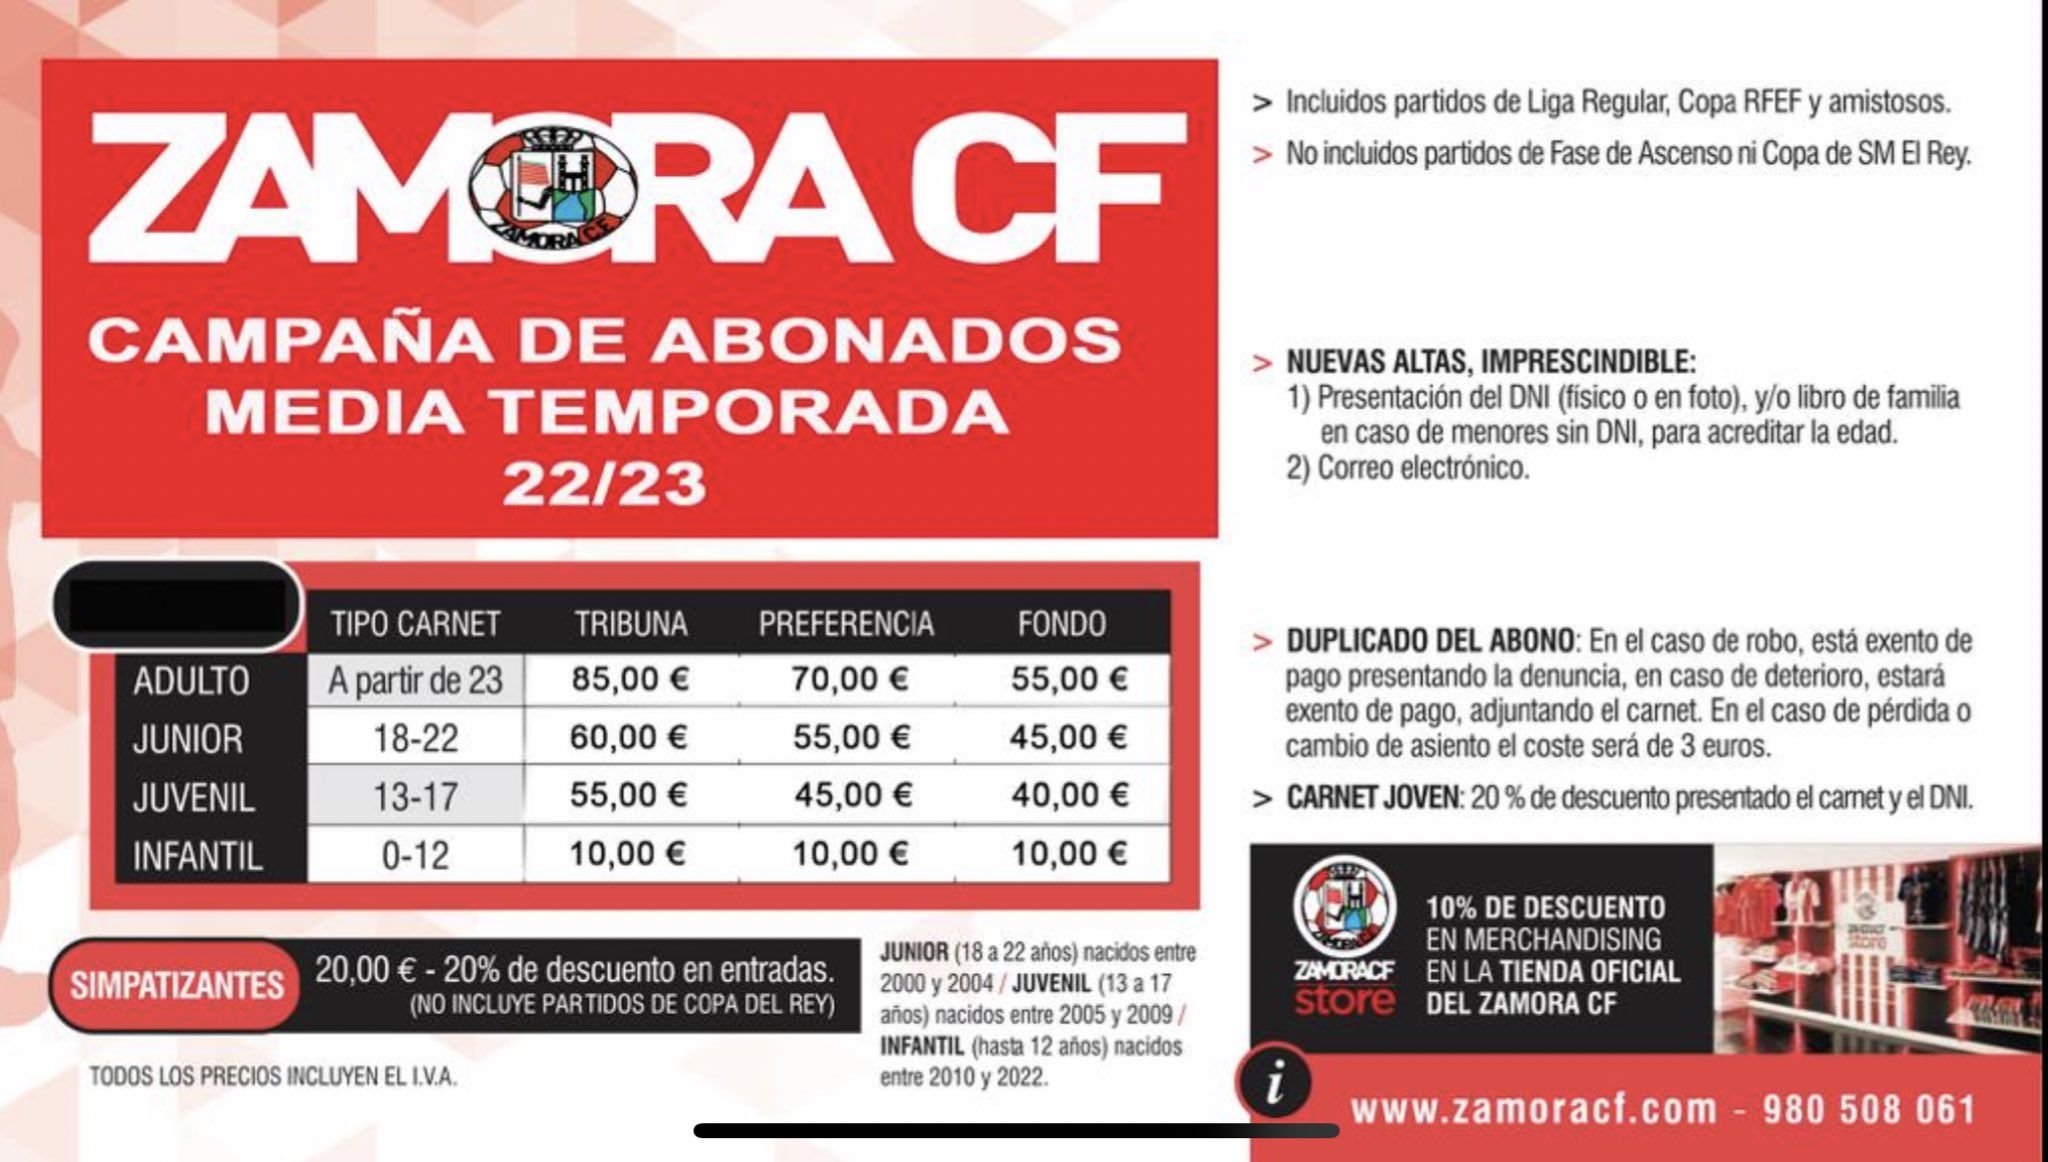 Campaña de abonados de media temporada del Zamora CF